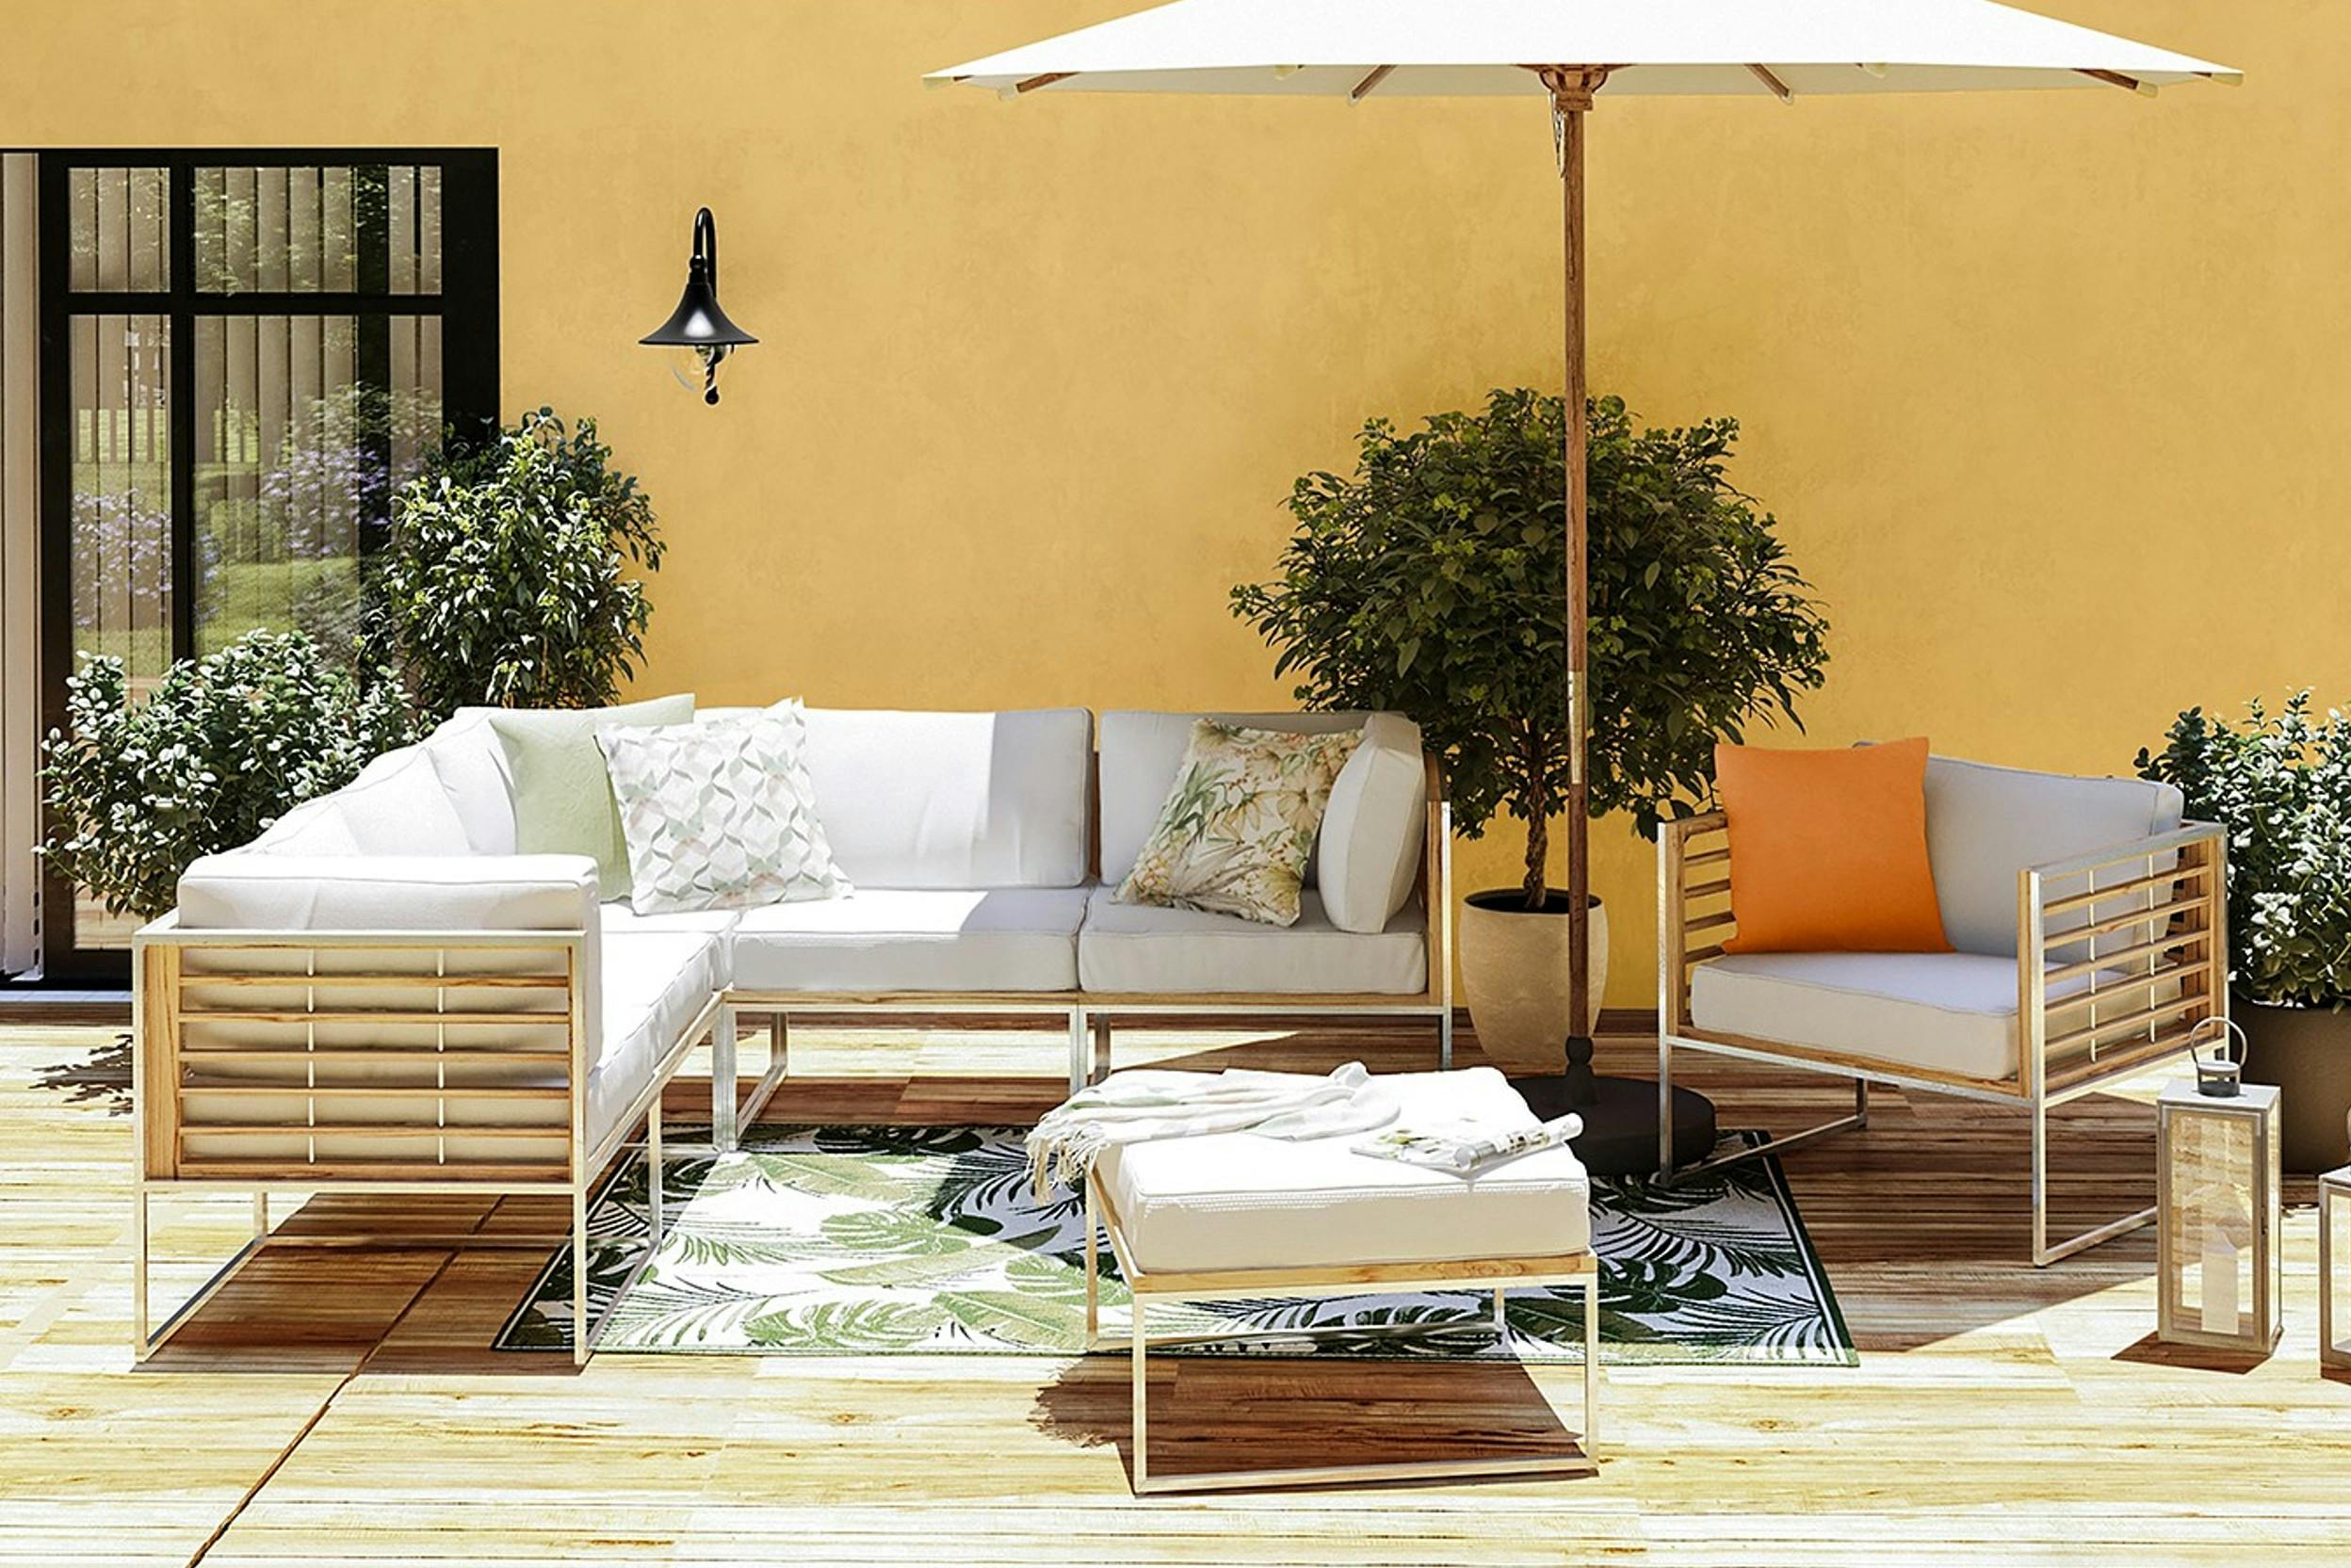 Gartenlounge mit weissen Polstern mit Sonnenschirm vor gelber Hauswand